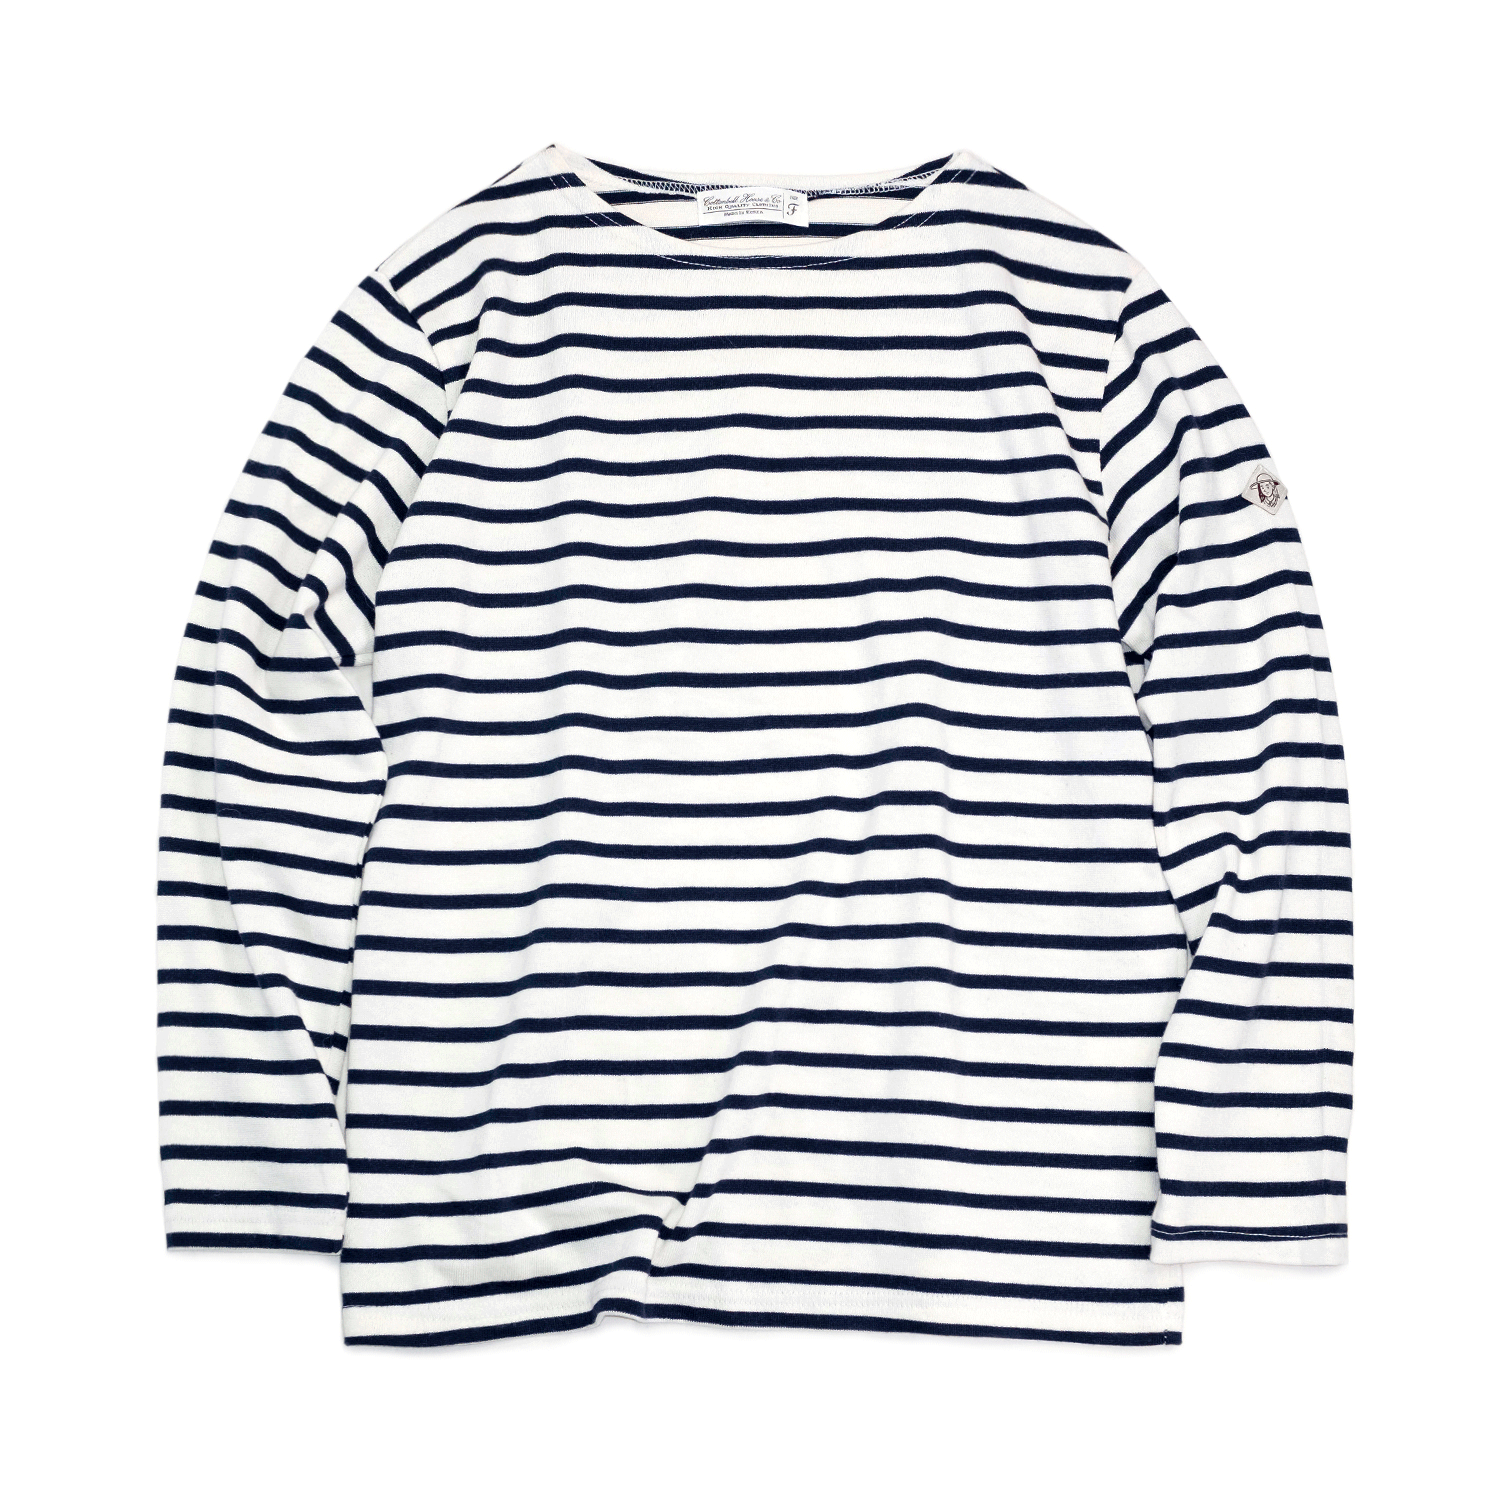 Boat Neck Stripe Tee Shirts - Ivory/Navy Stripe